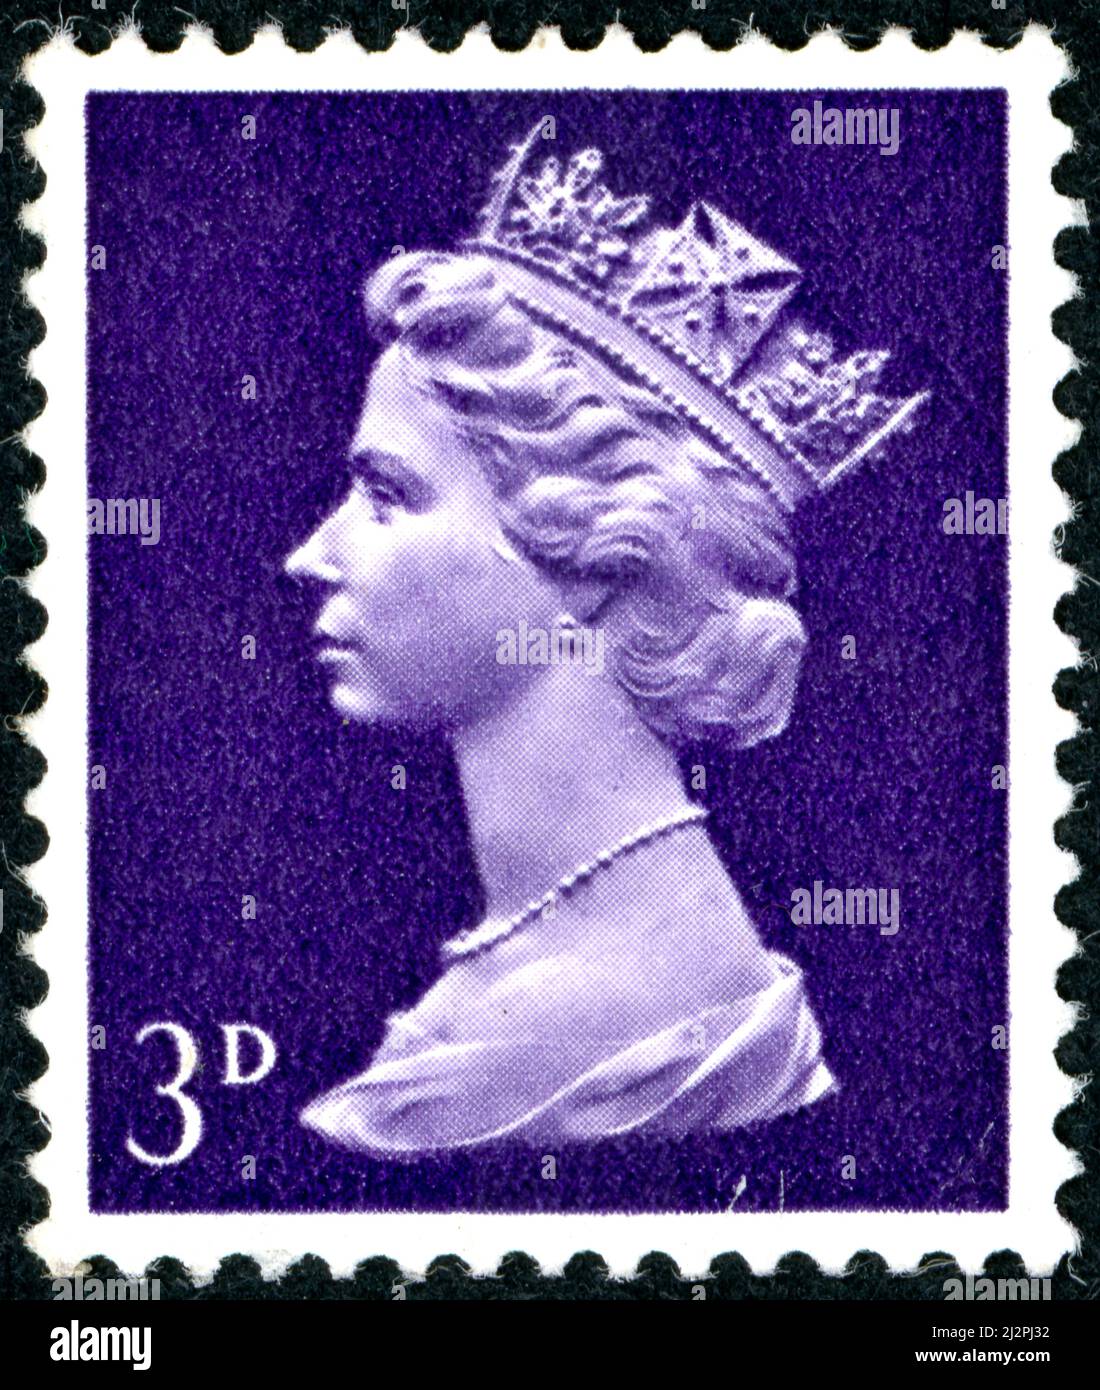 ROYAUME-UNI - VERS 1967: Un timbre imprimé en Angleterre, montre la reine Elizabeth II, vers 1967 Banque D'Images